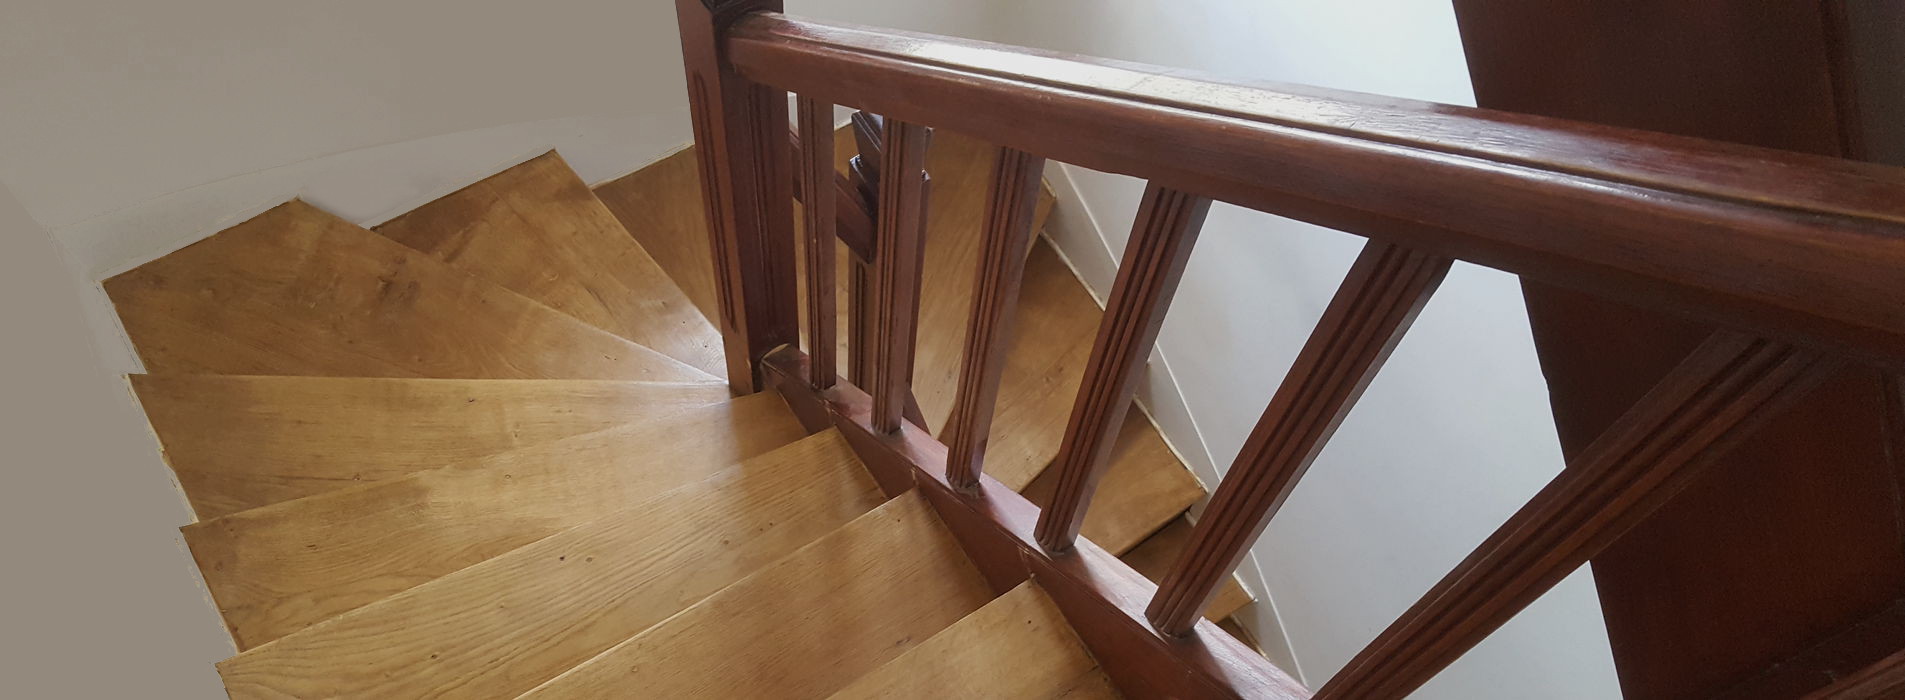 renovation-escalier-parquet